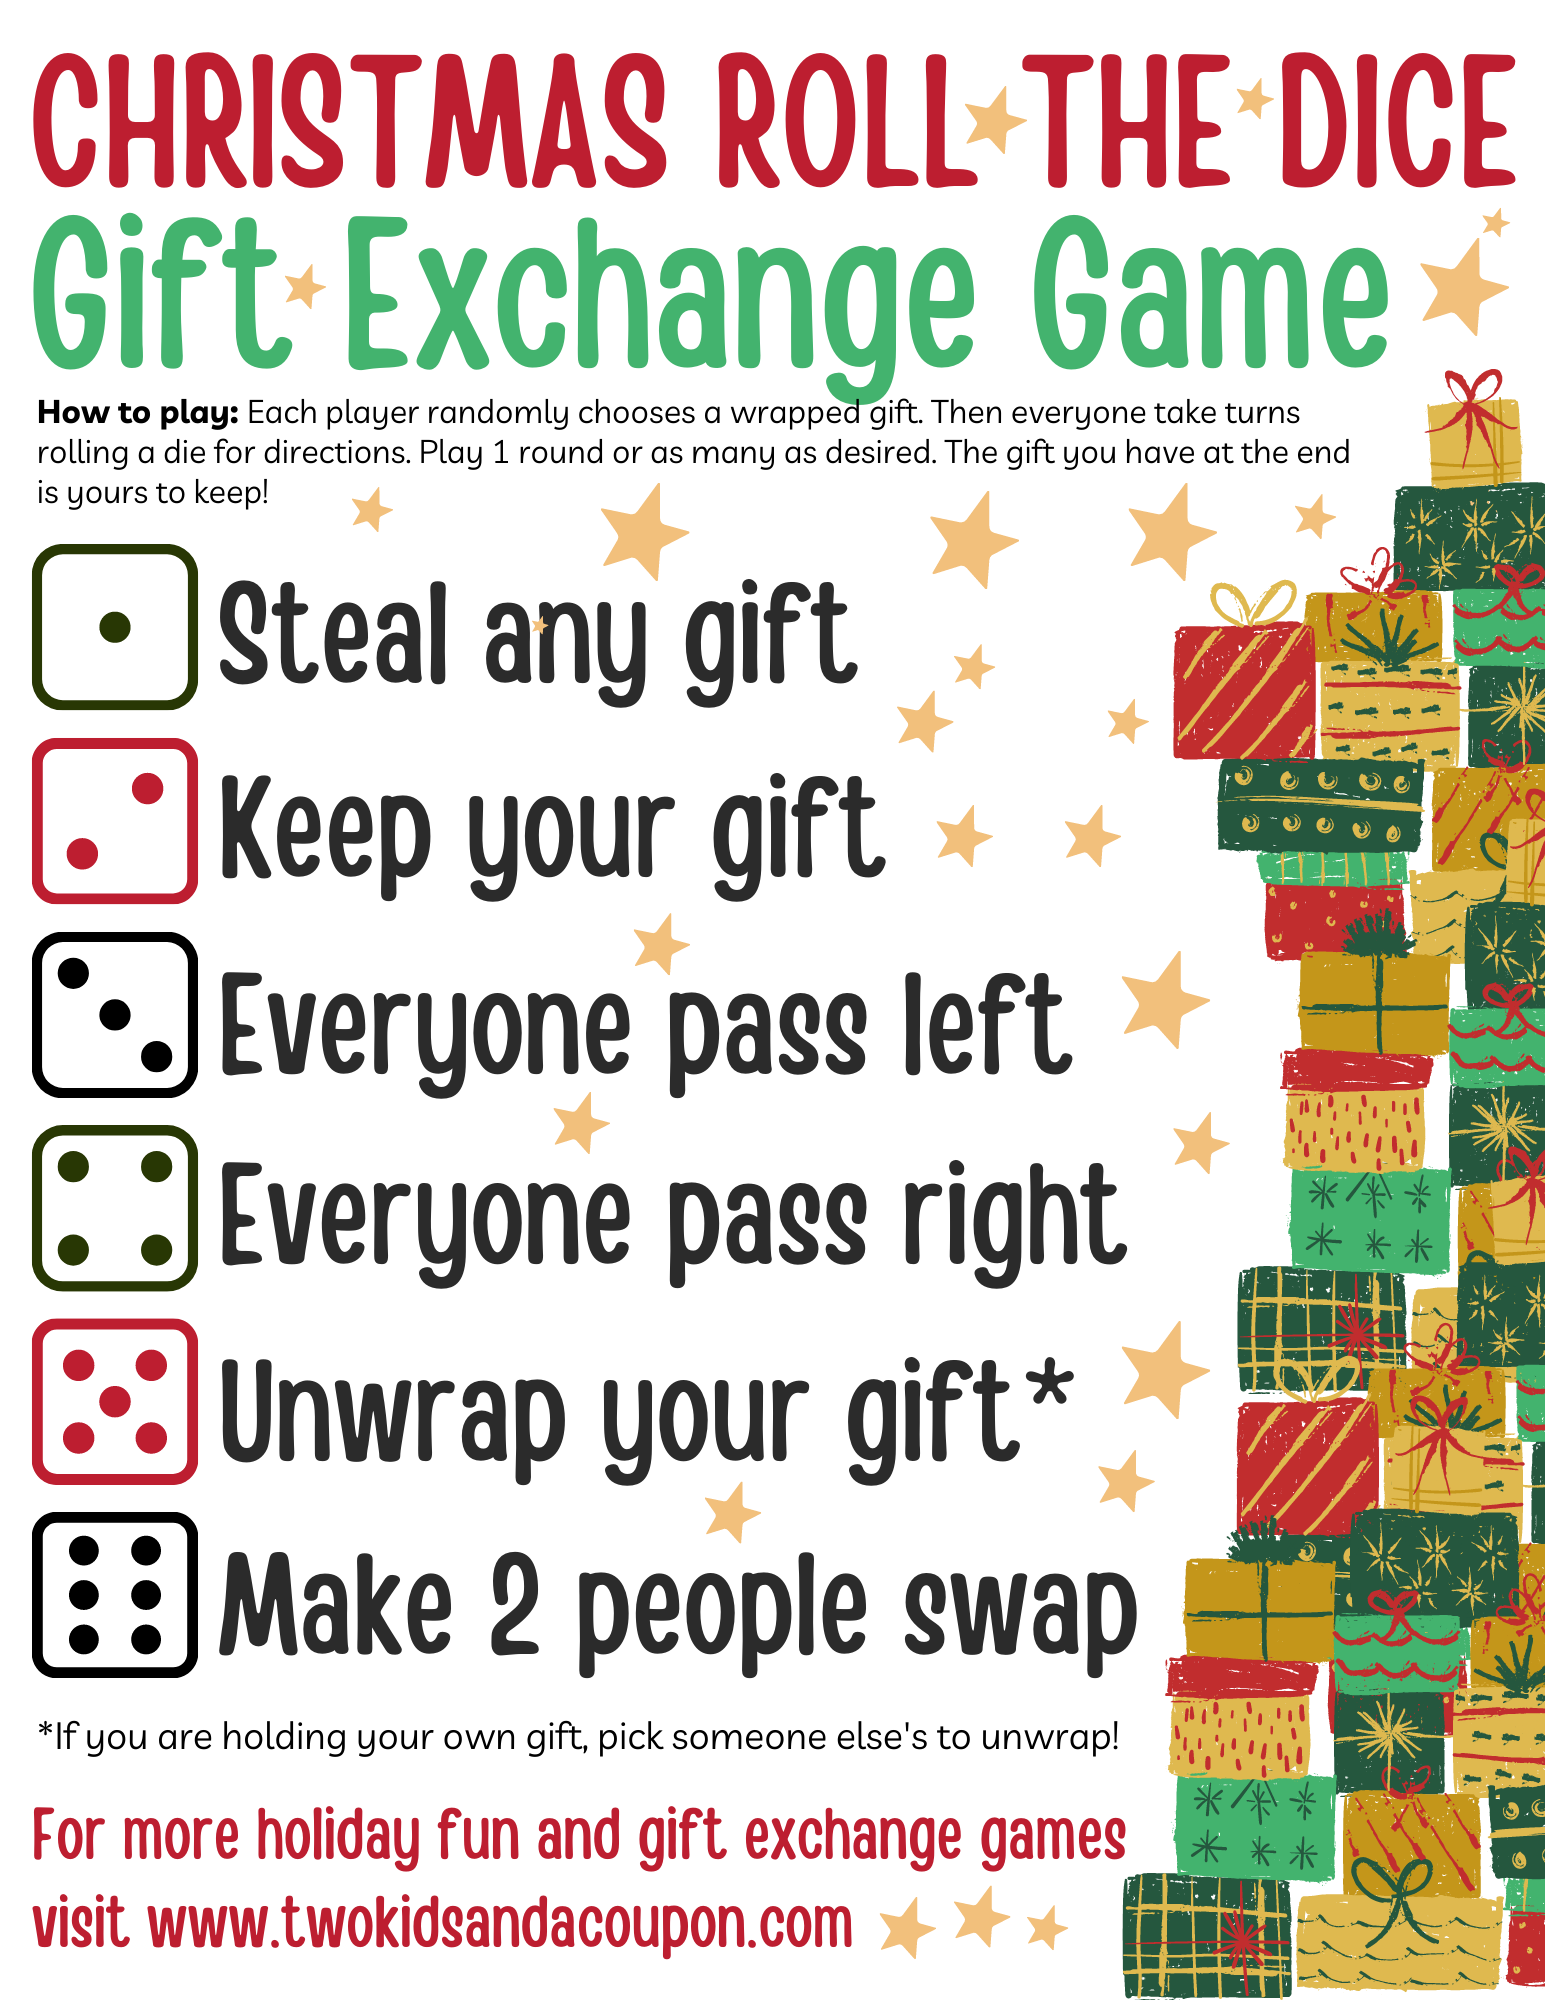 Free Printable Christmas Dice Game Gift Exchange Rules Printable